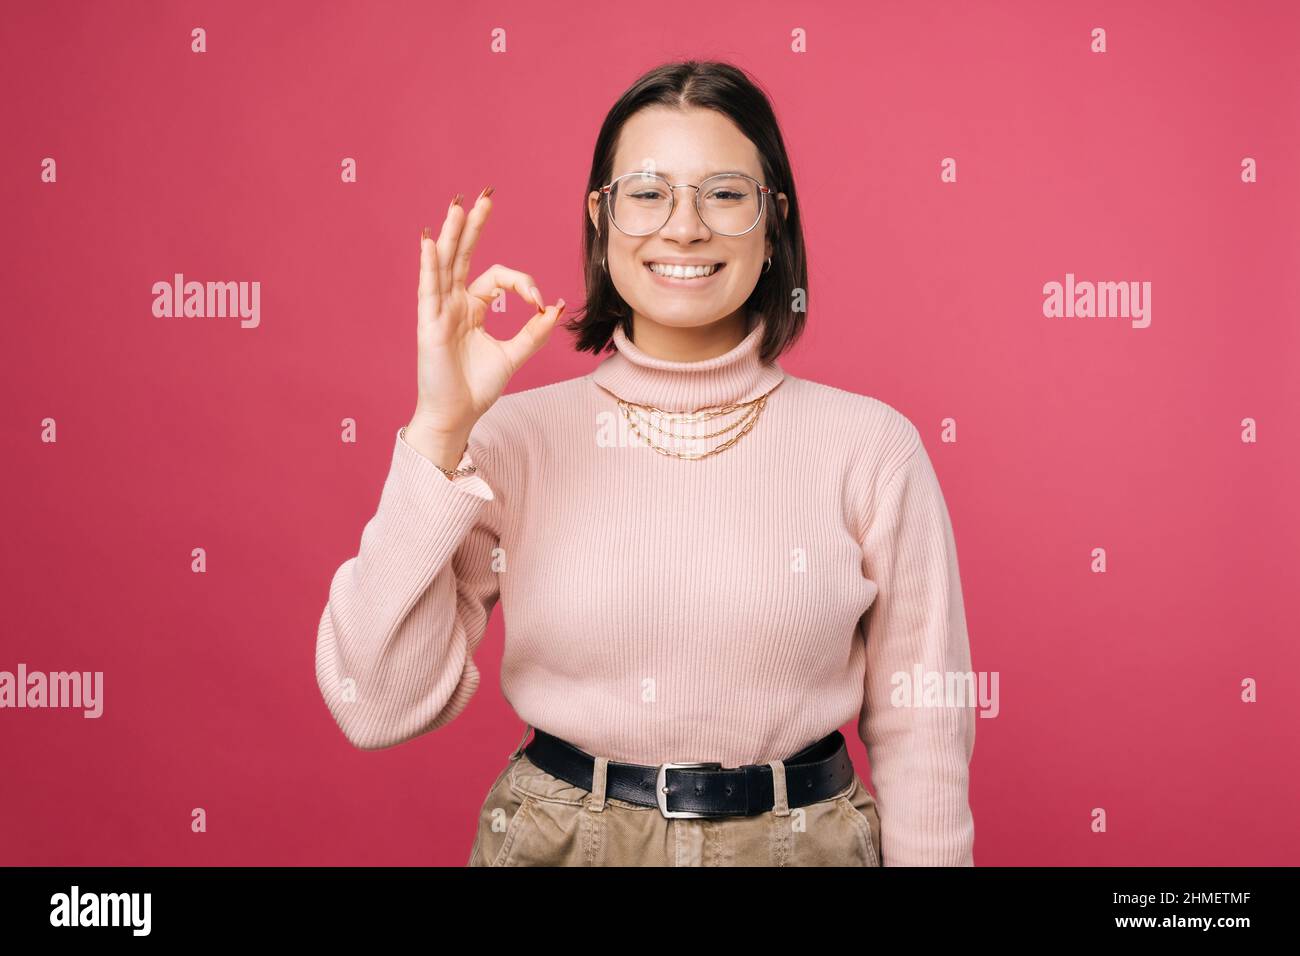 Alles wird in Ordnung sein, sagt eine junge Frau, die eine gute Geste zeigt. Porträt auf rosa Hintergrund. Stockfoto